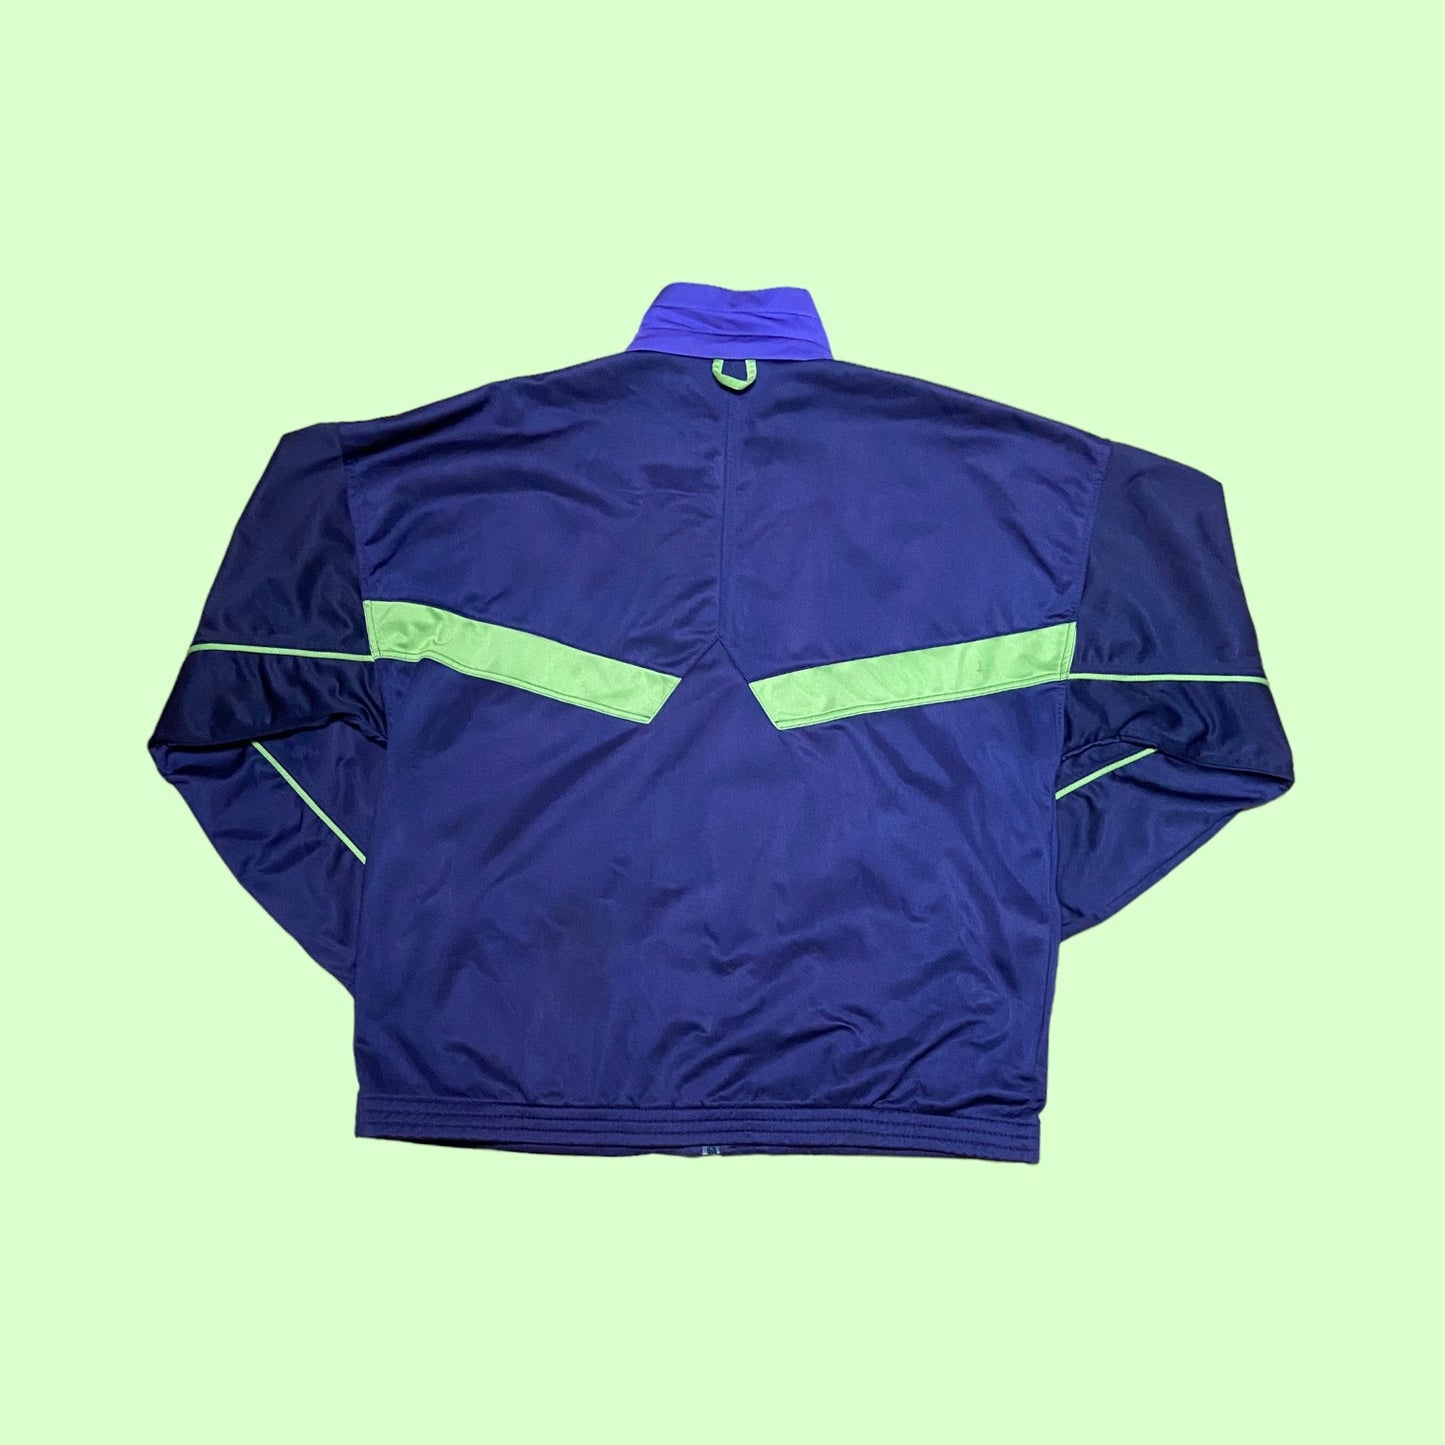 Vintage Puma track jacket - L